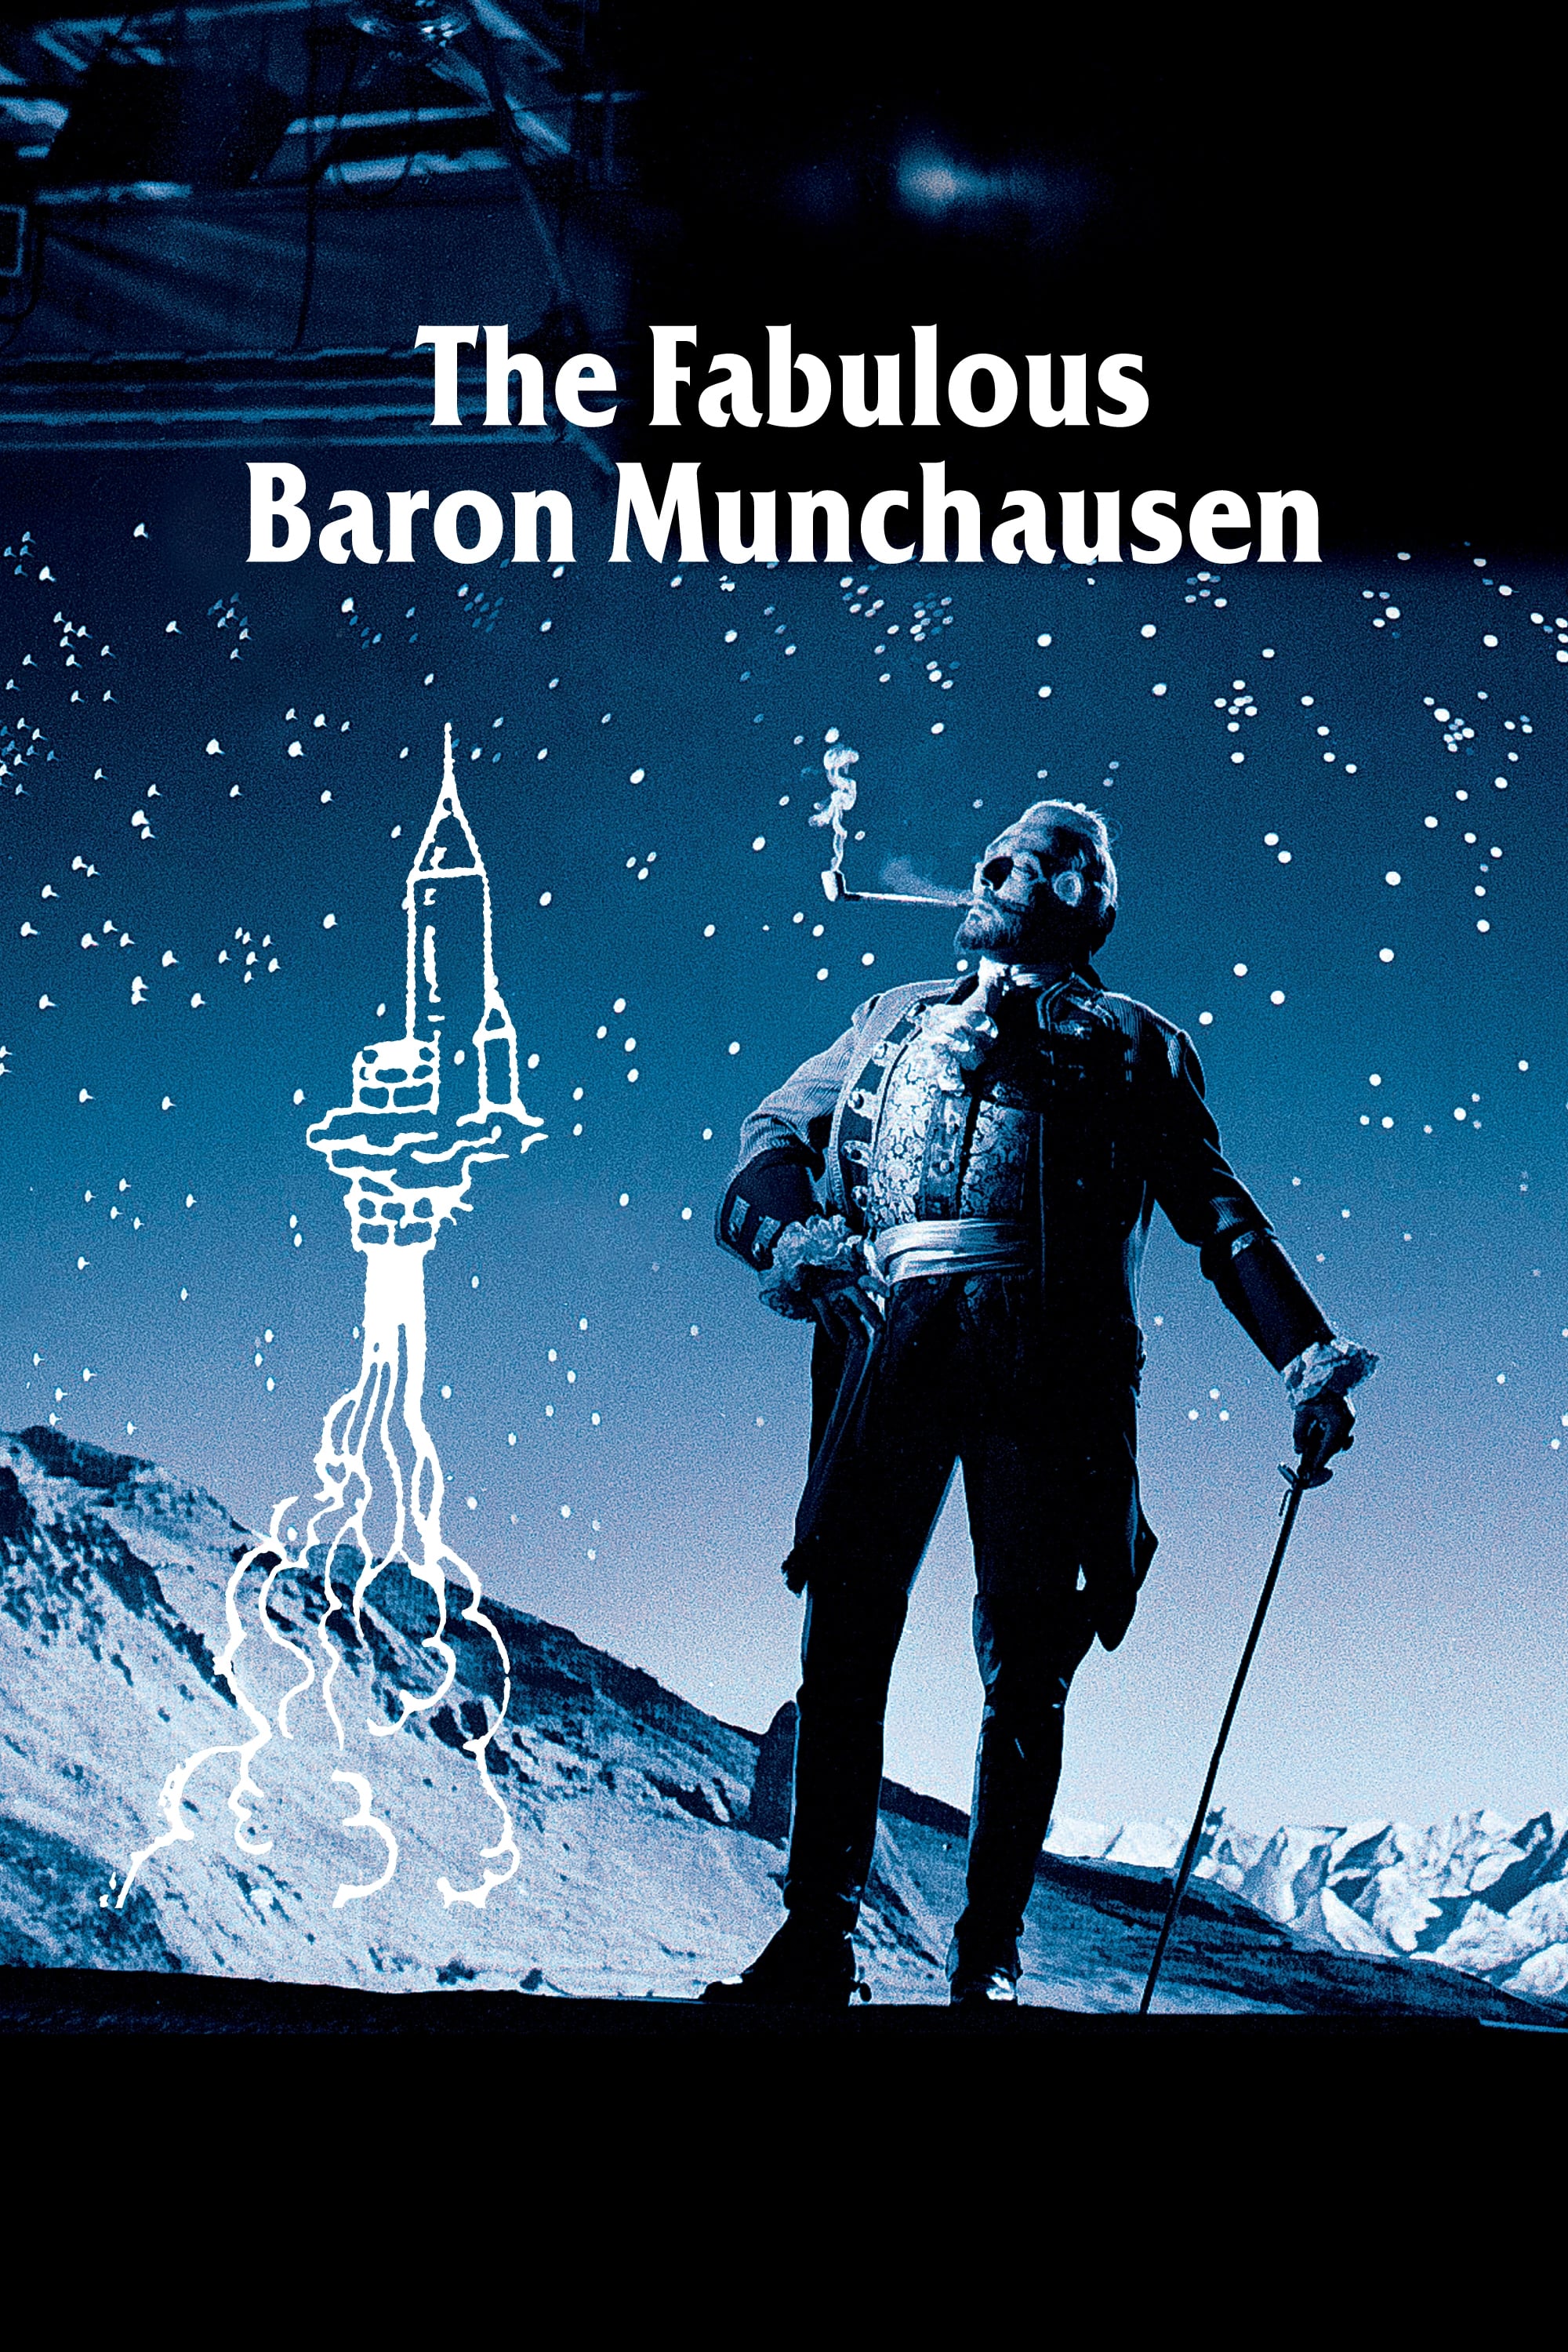 The Fabulous Baron Munchausen (1961)